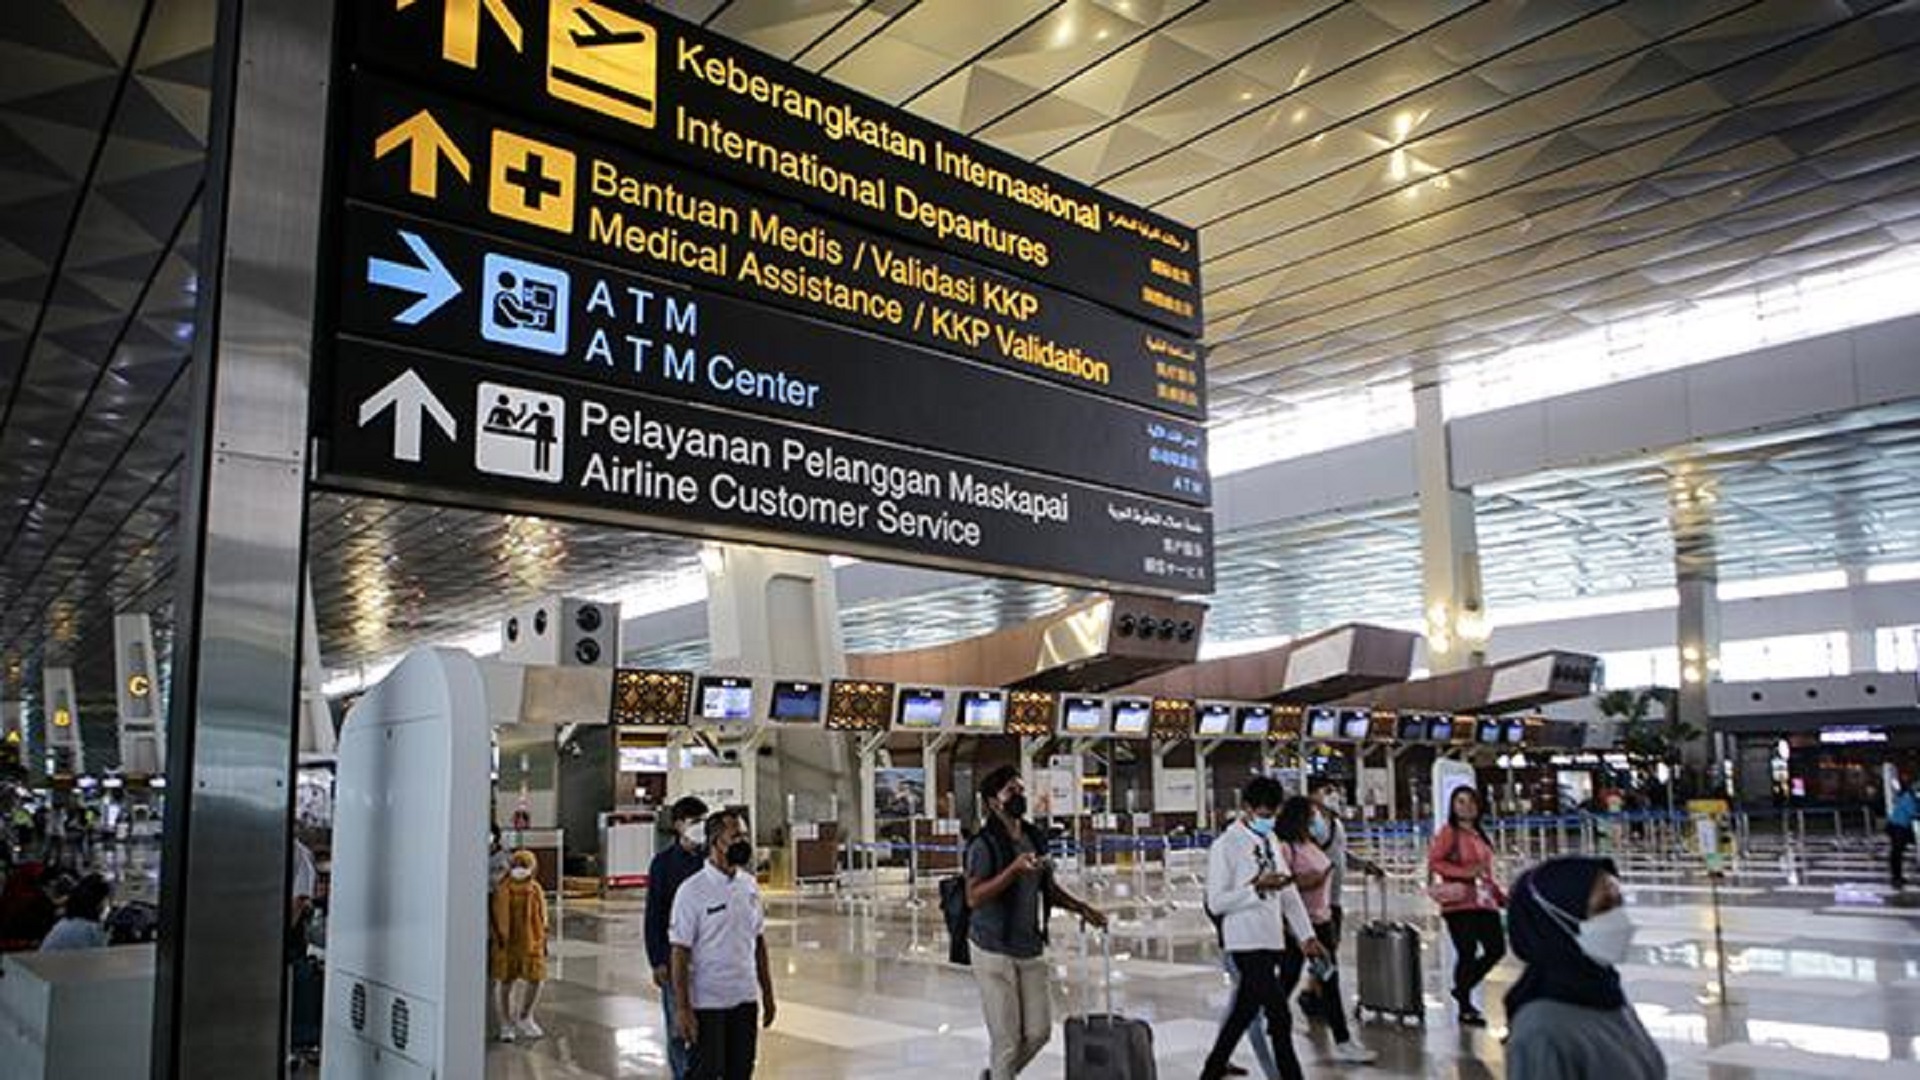 Staf Bandara Soekarno-Hatta Masuk 10 Besar Terbaik di Asia